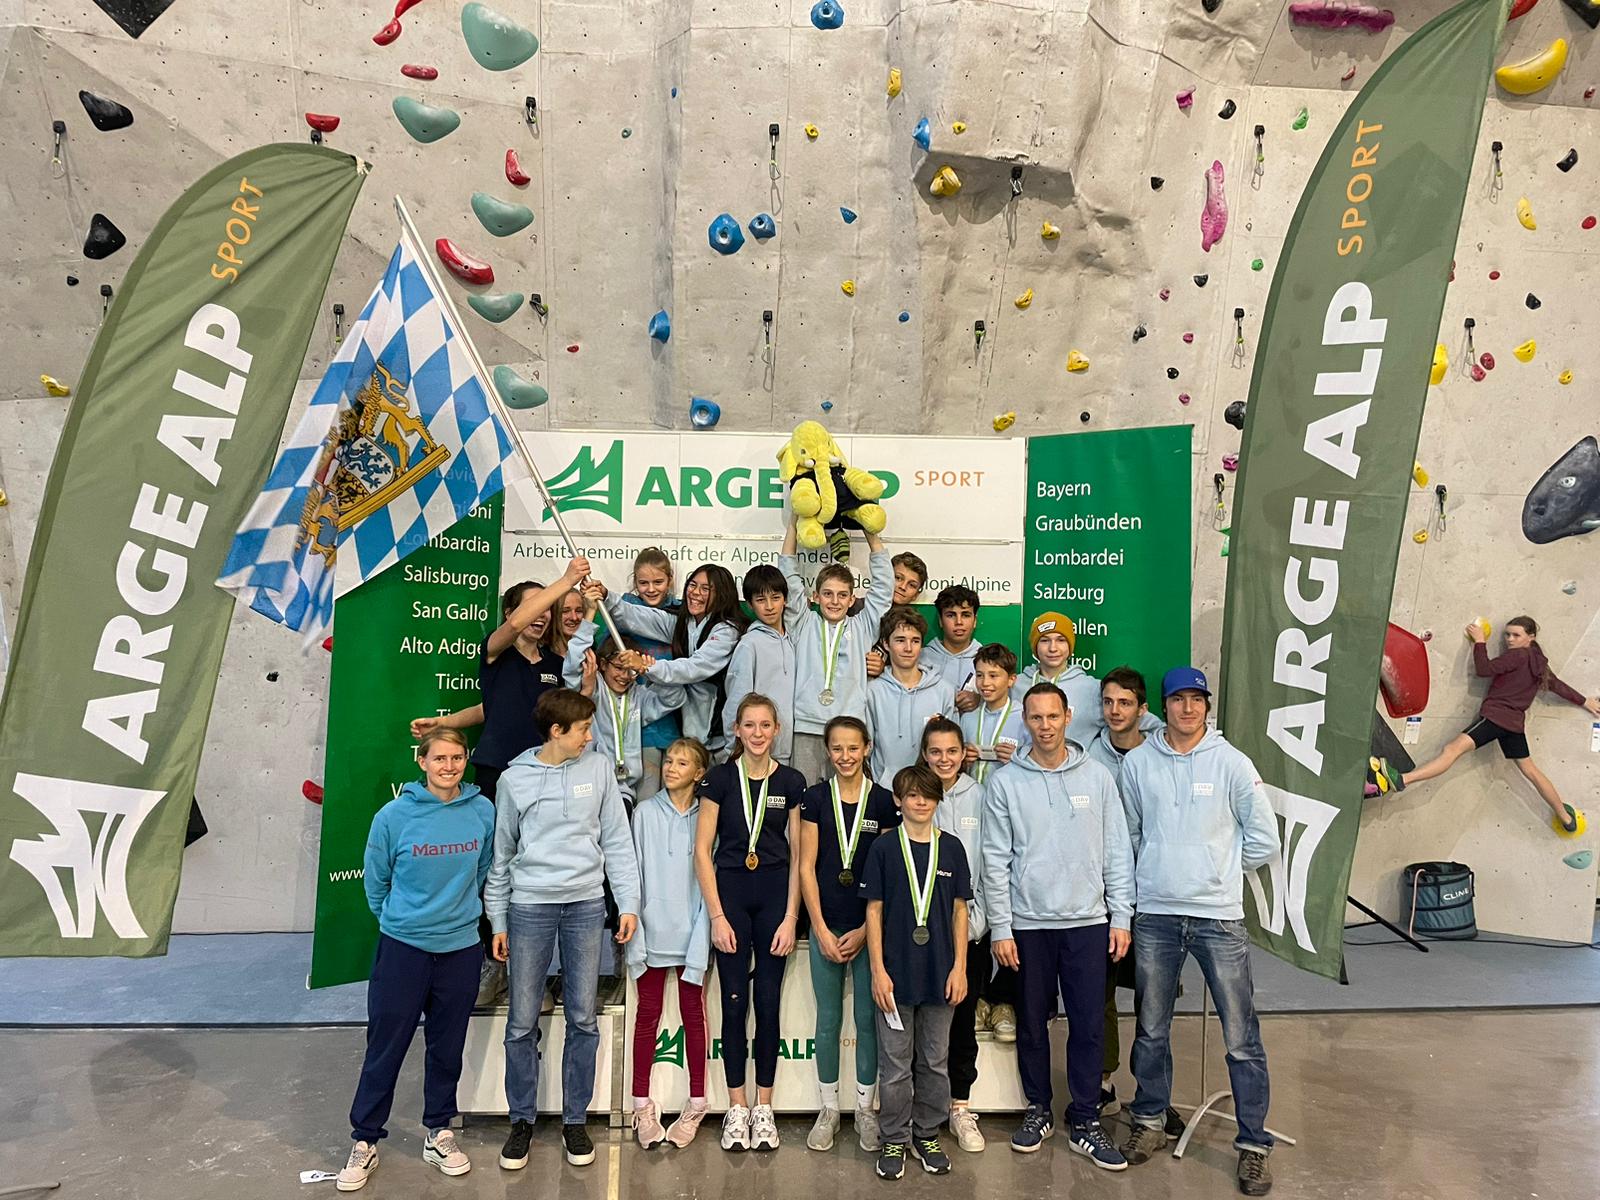 Gruppenfoto von den Teilnehmern und Trainern der Arge Alp